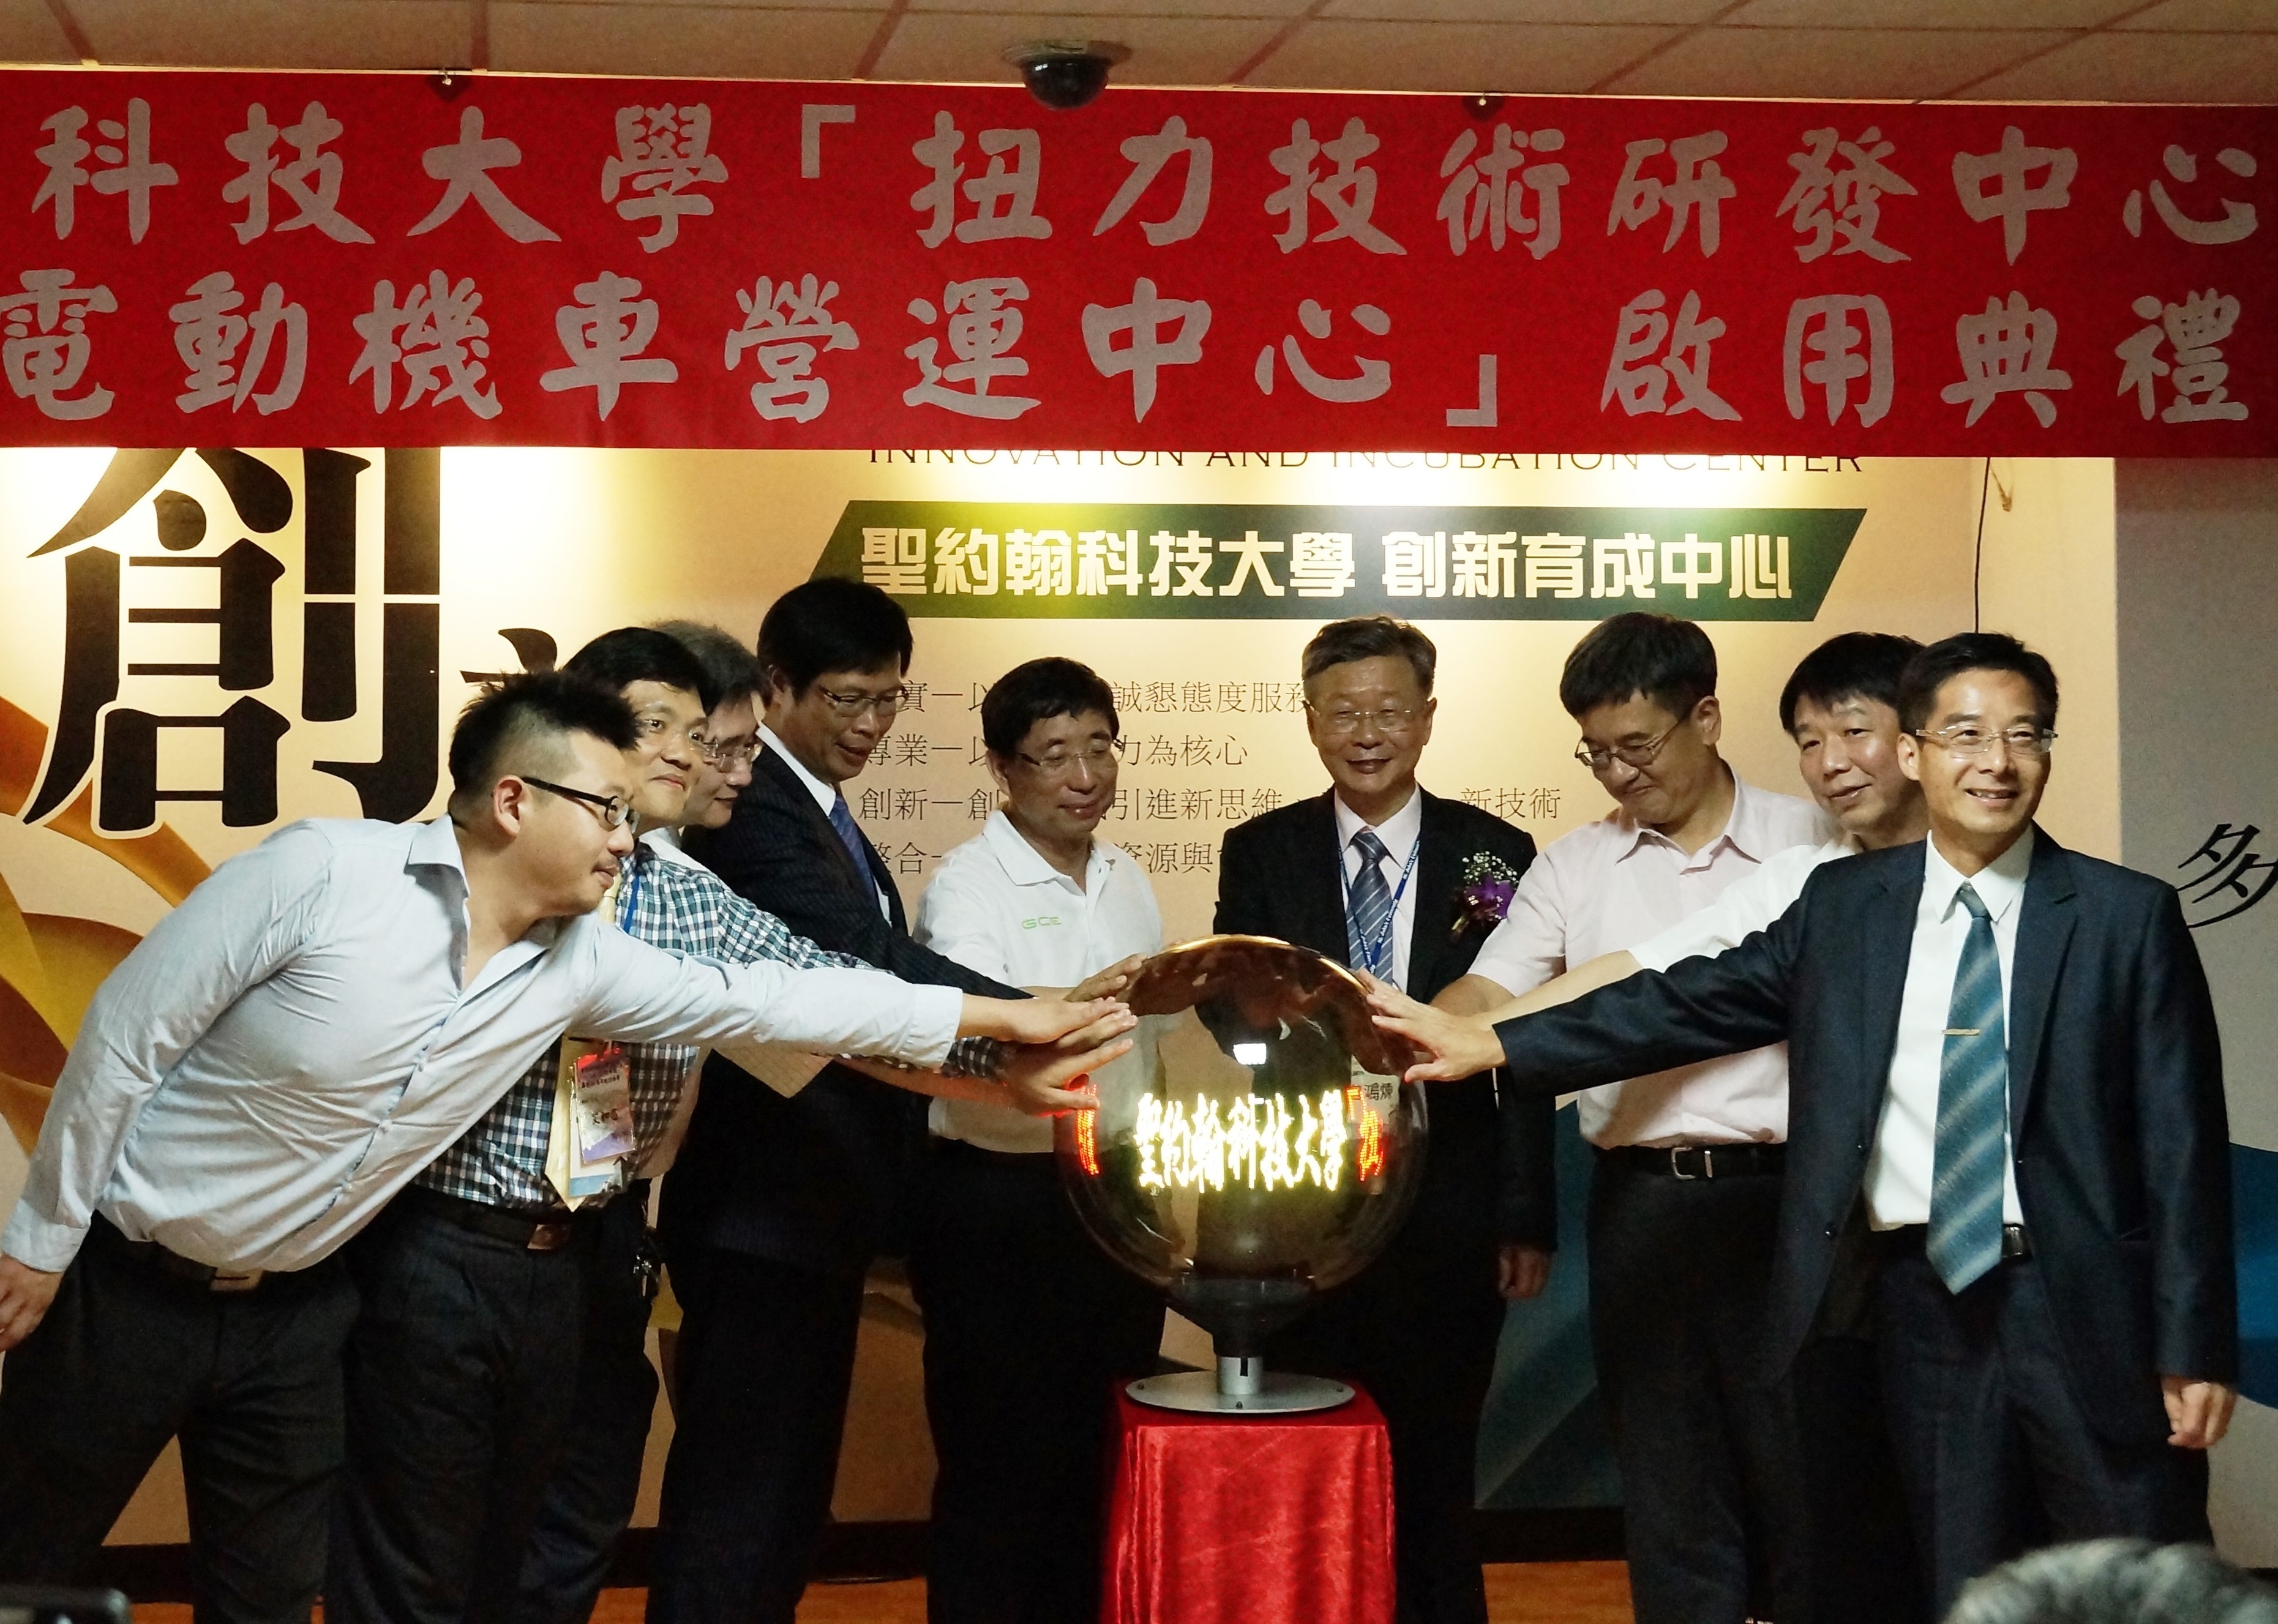 上海諾霸精密機械公司曾鴻煉董事長（右四）於聖約大創新育成中心成立全台科大首創的「扭力技術研發中心」